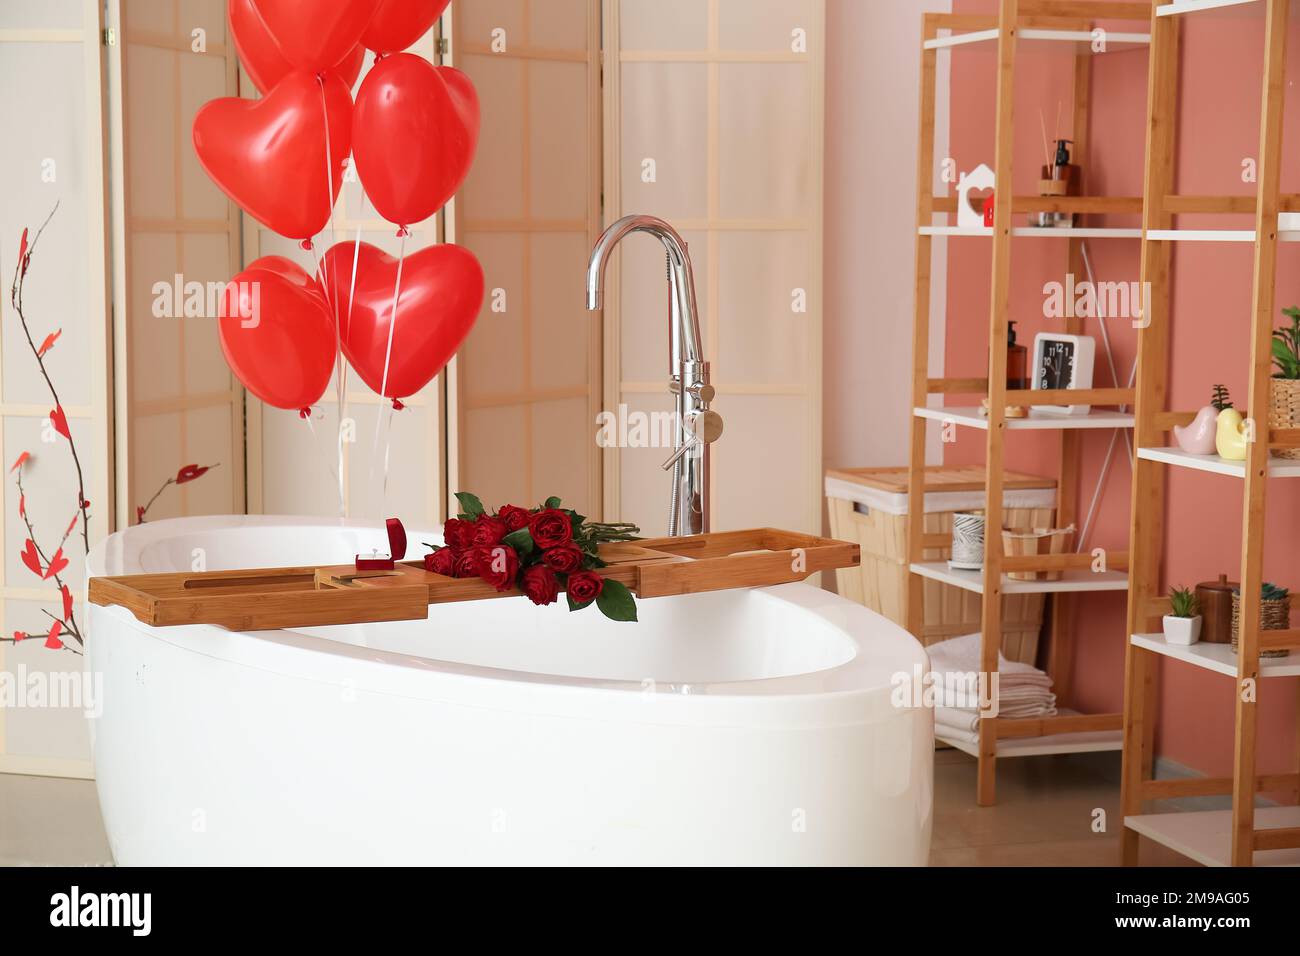 Intérieur de la salle de bains décorée pour la Saint-Valentin avec baignoire,  roses et ballons Photo Stock - Alamy